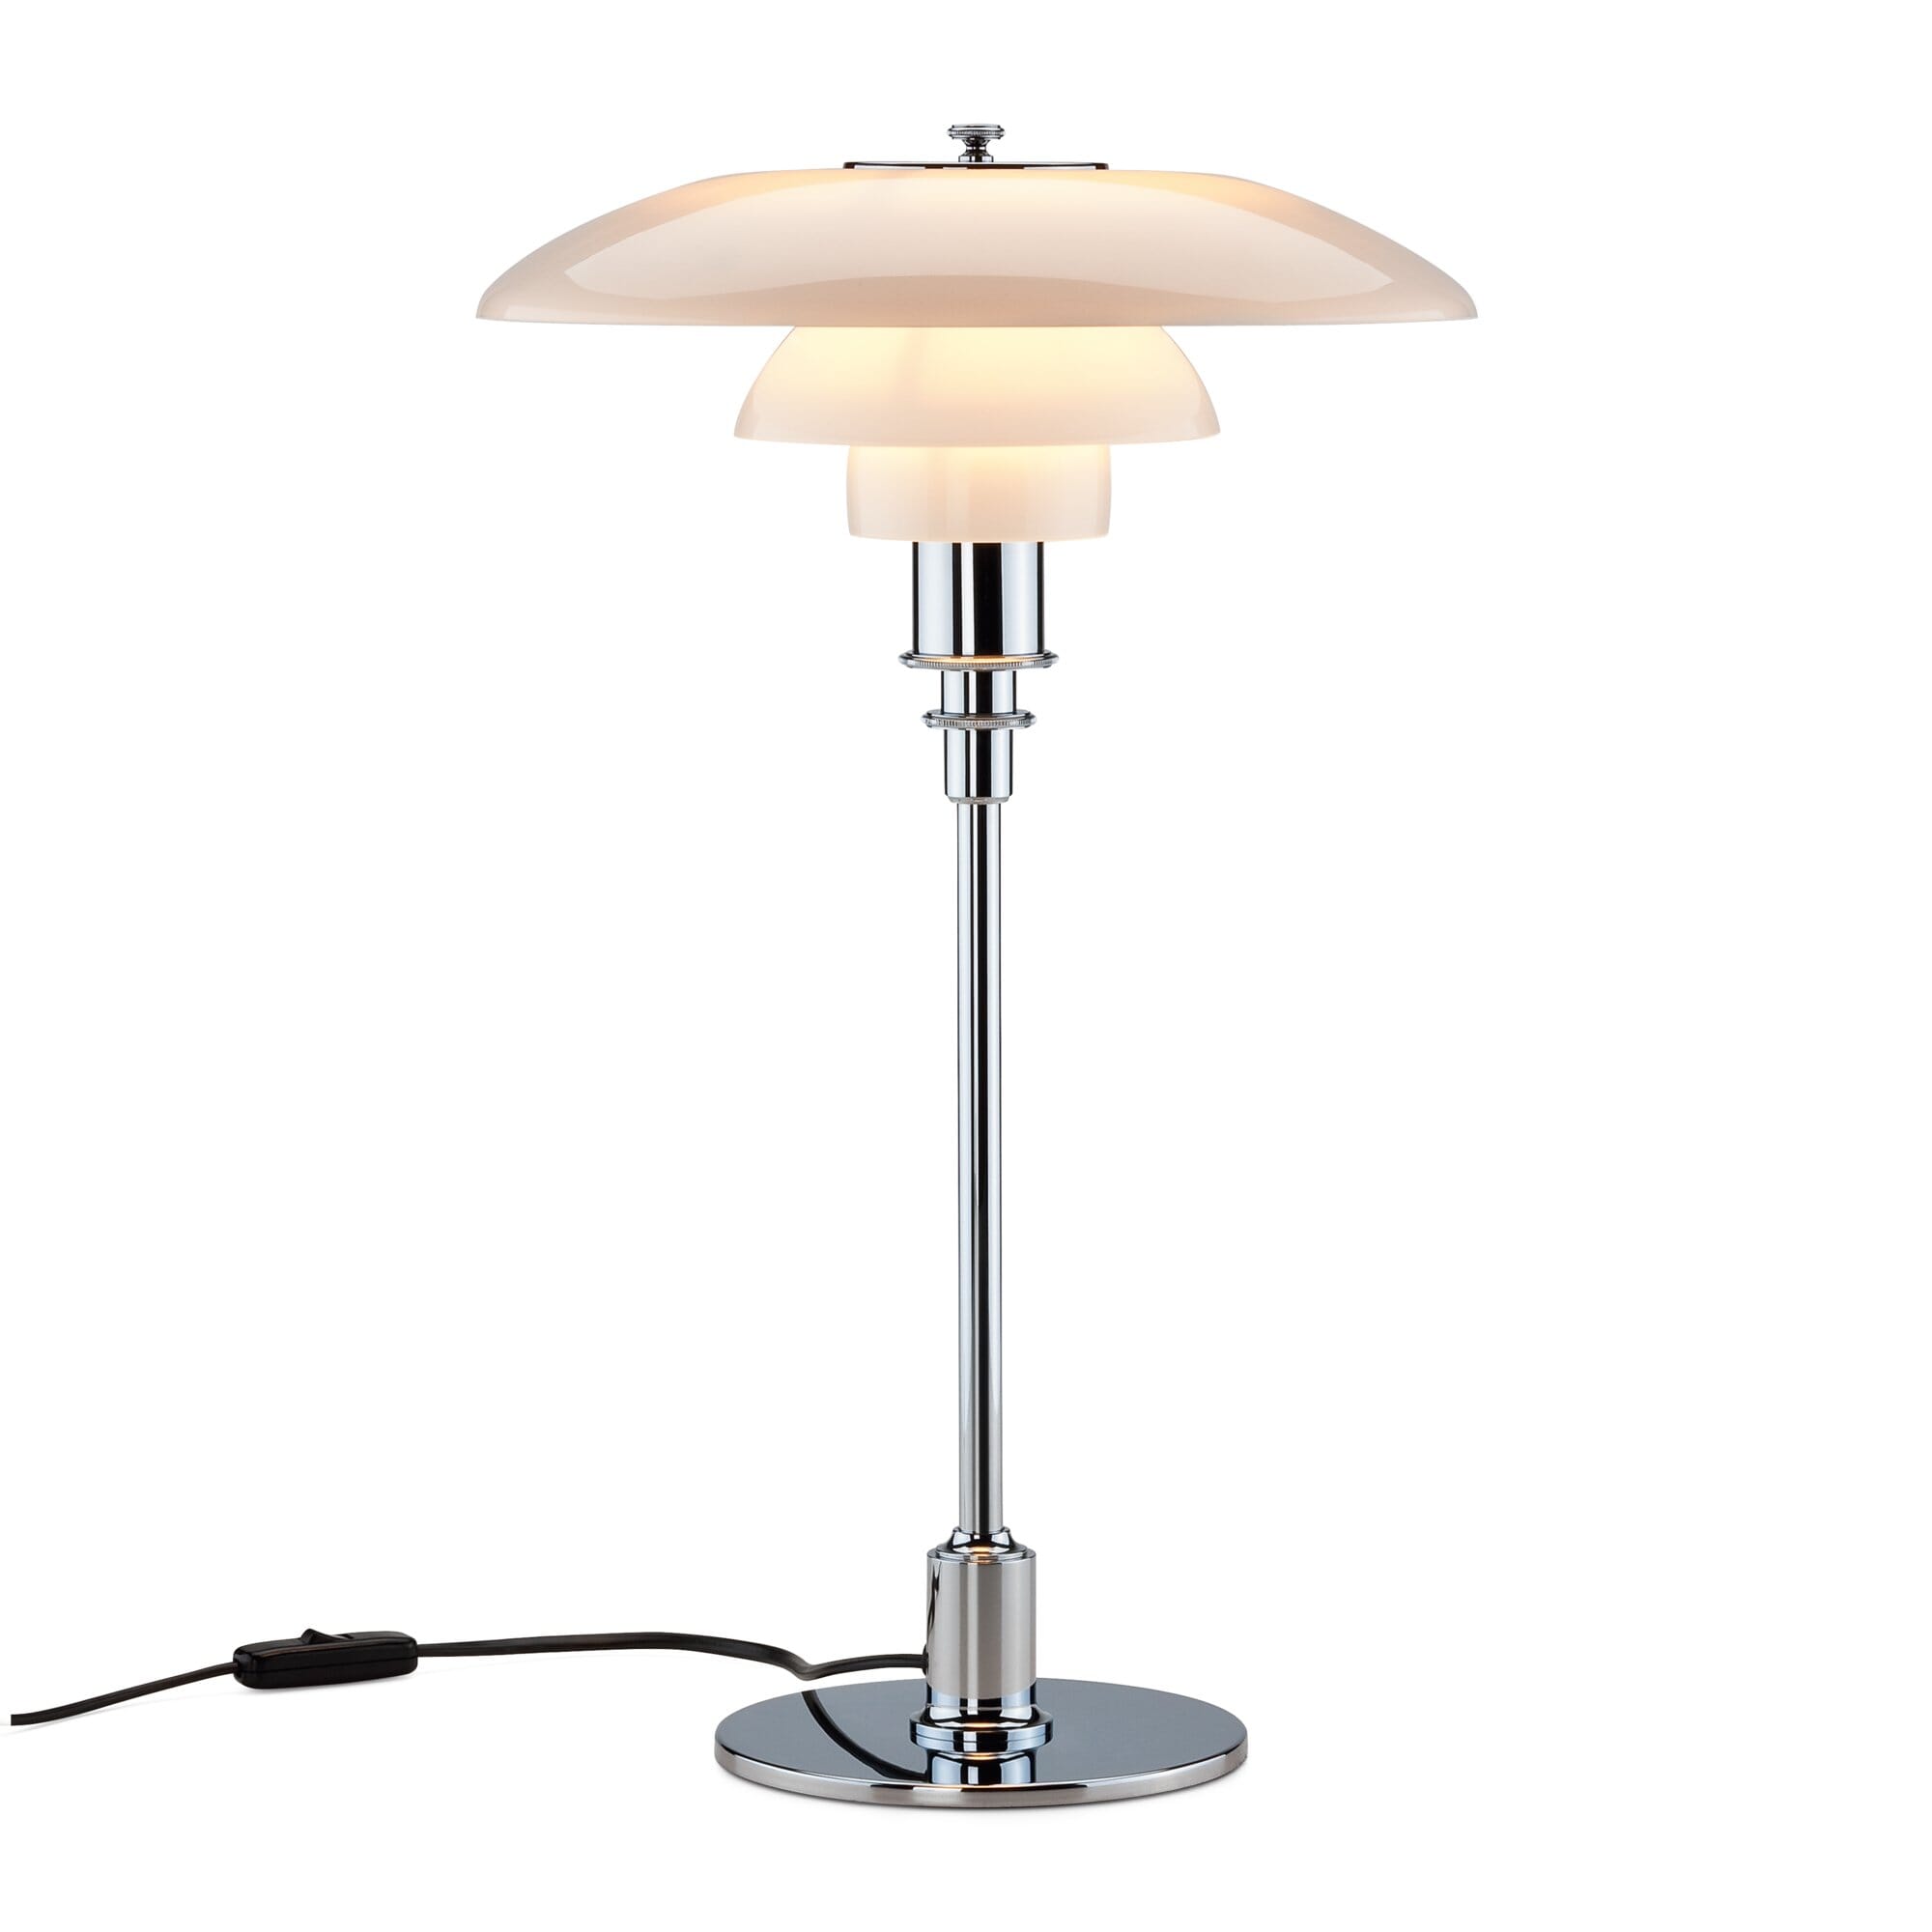 Louis poulsen - Ph 4/3 table lamp